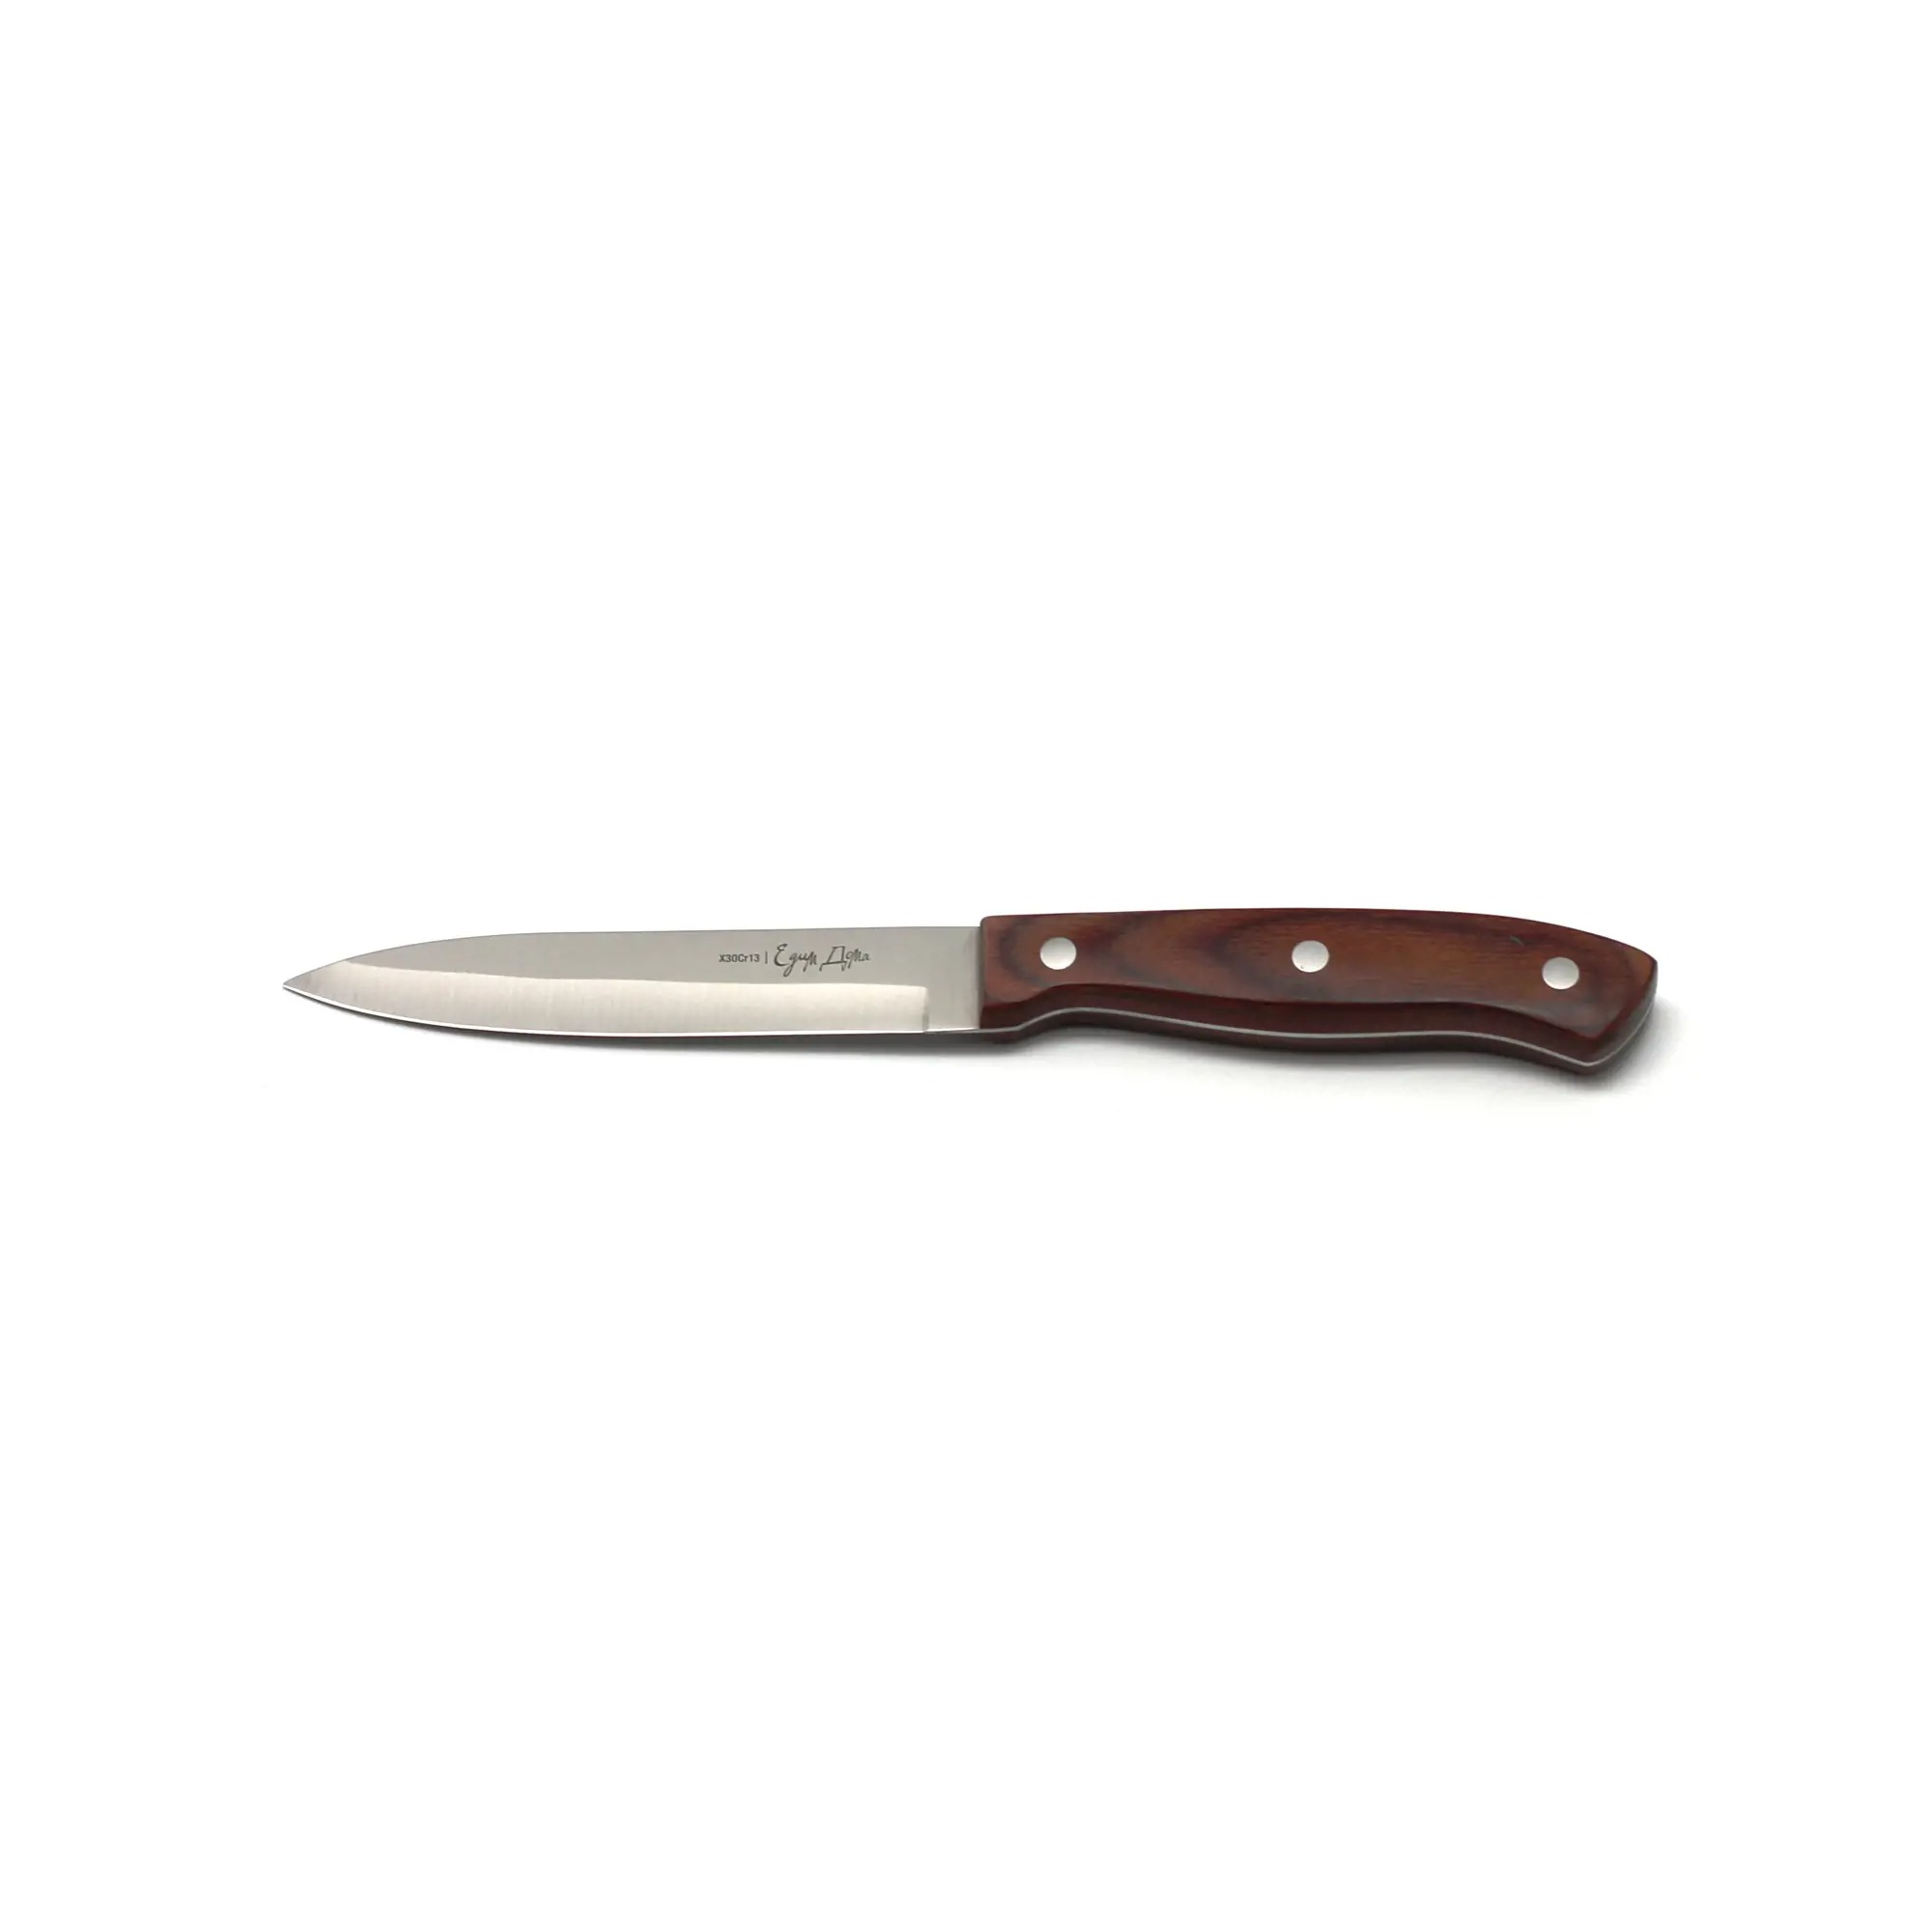 Нож универсальный Едим дома кухонный 12см листовой (ED-408) нож универсальный едим дома кухонный 14см листовой ed 420